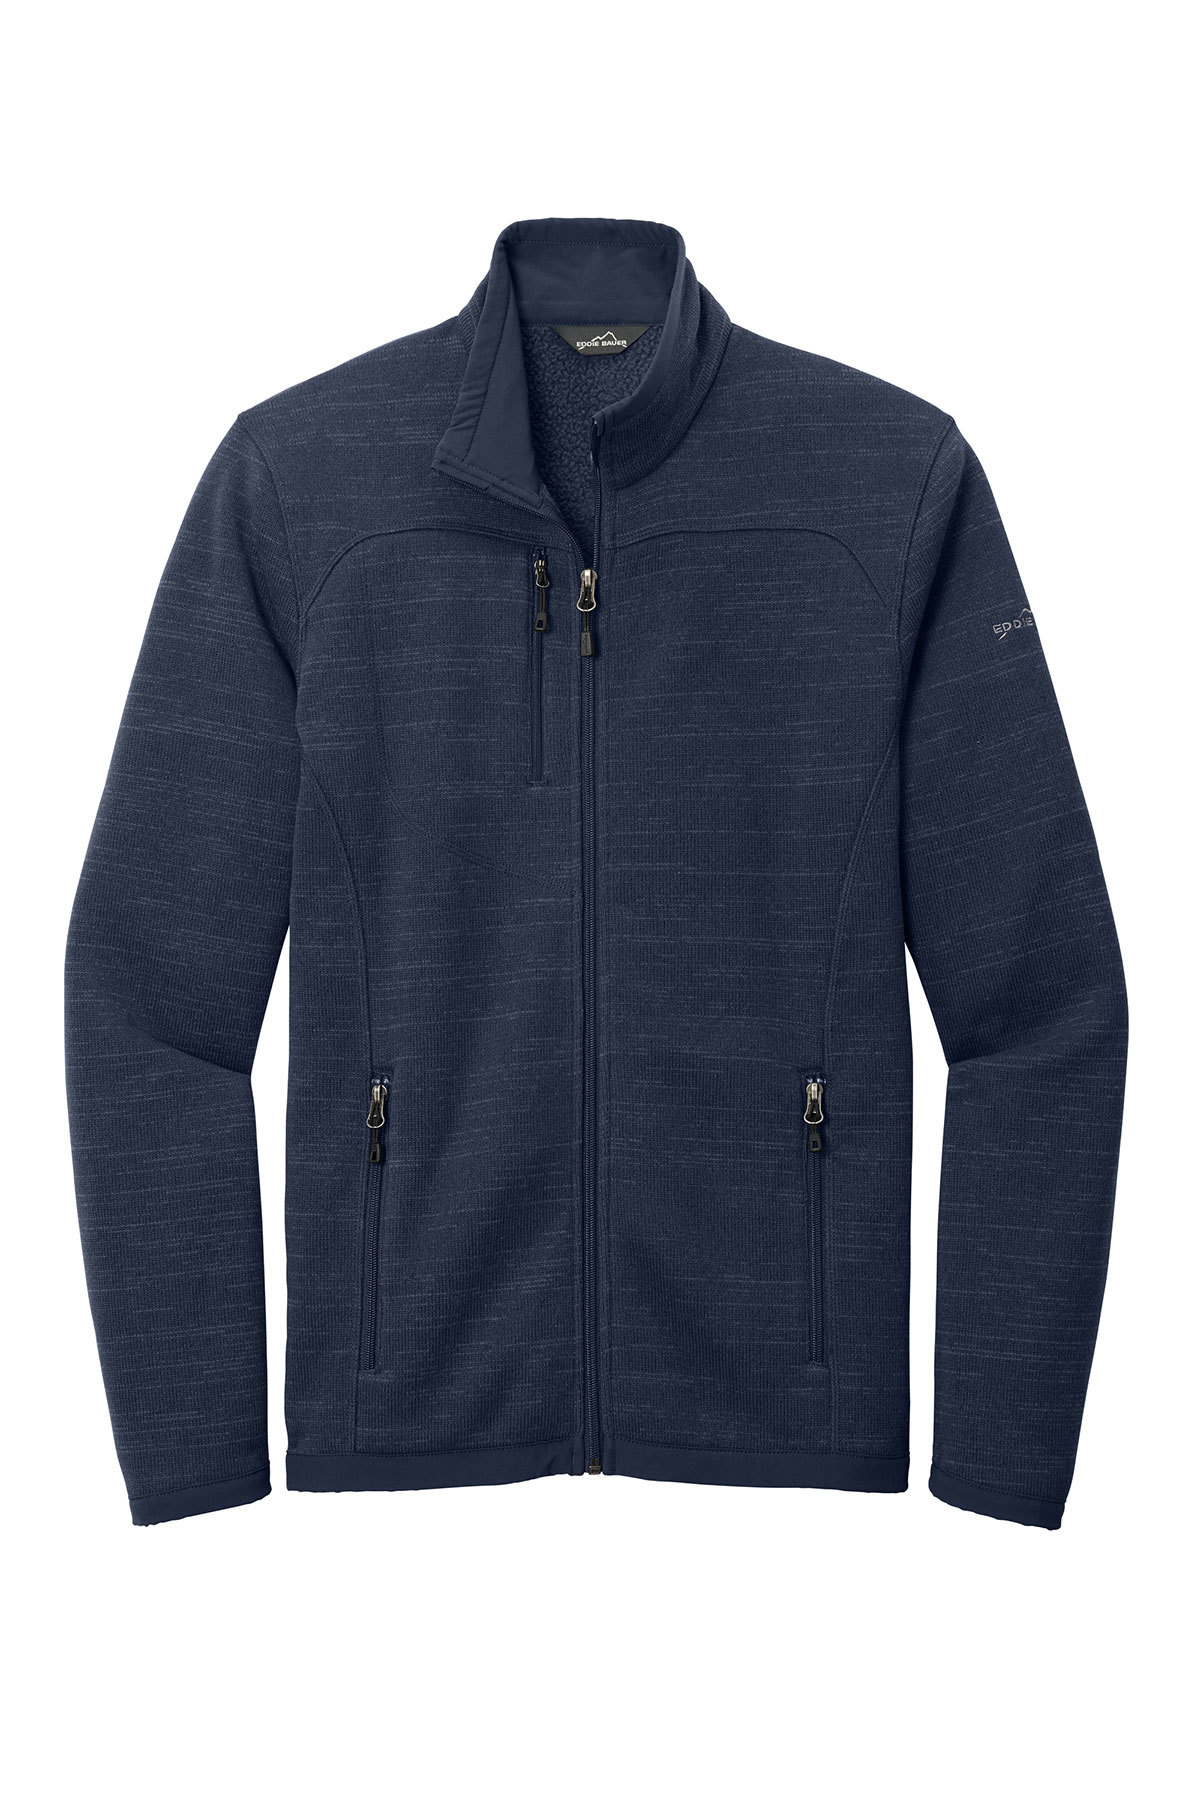 Eddie Bauer Sweater Fleece Full-Zip | Product | SanMar